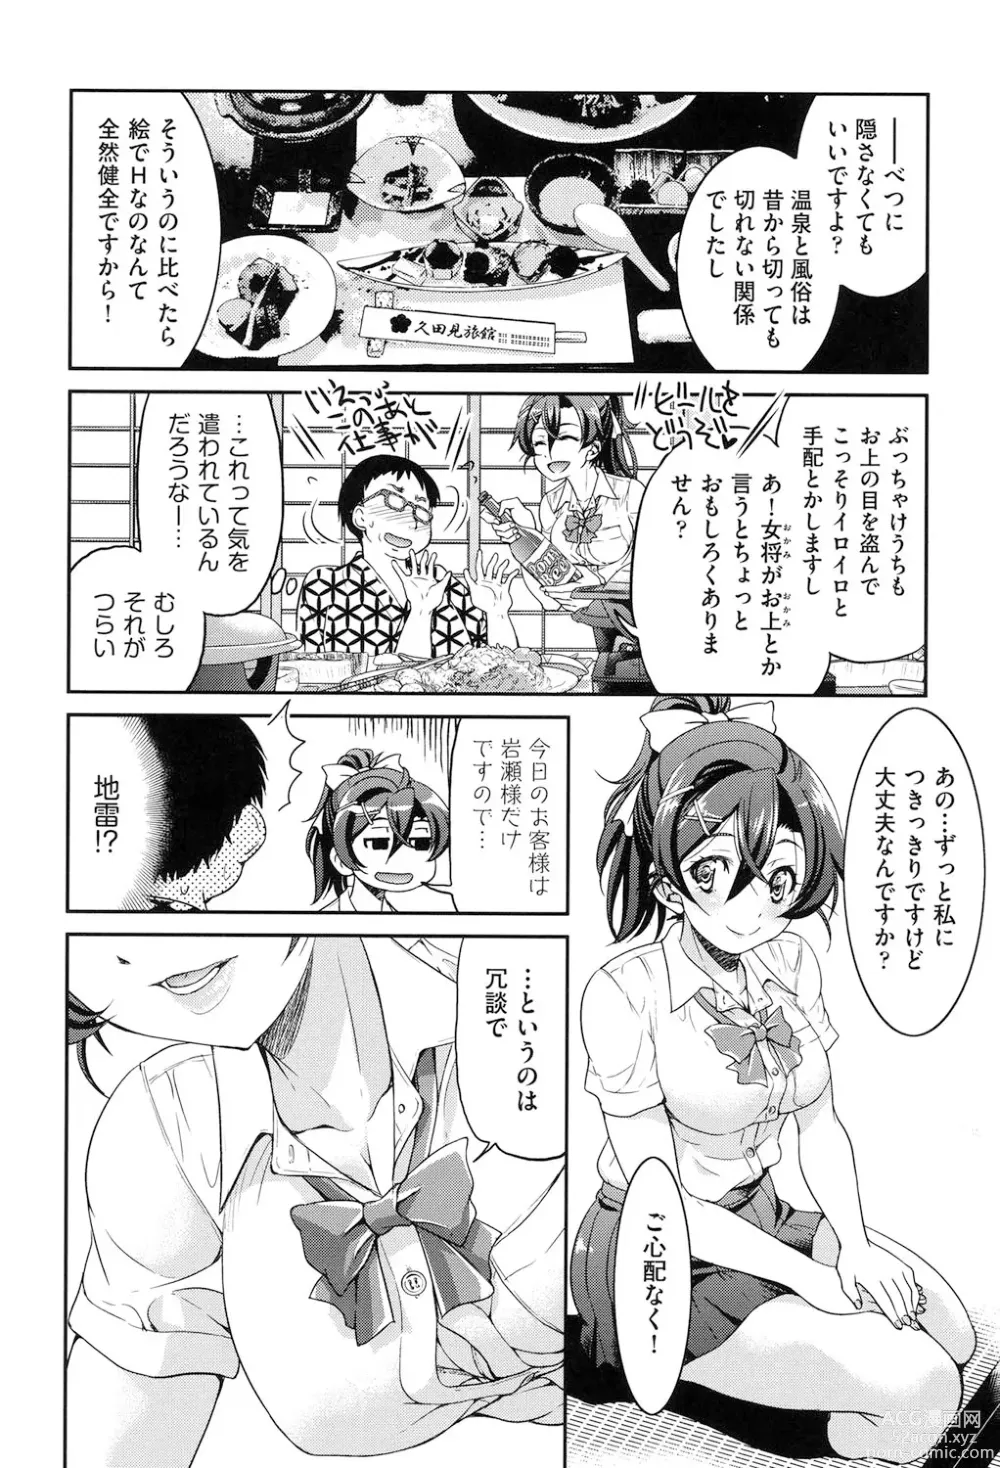 Page 13 of manga Seifuku JK